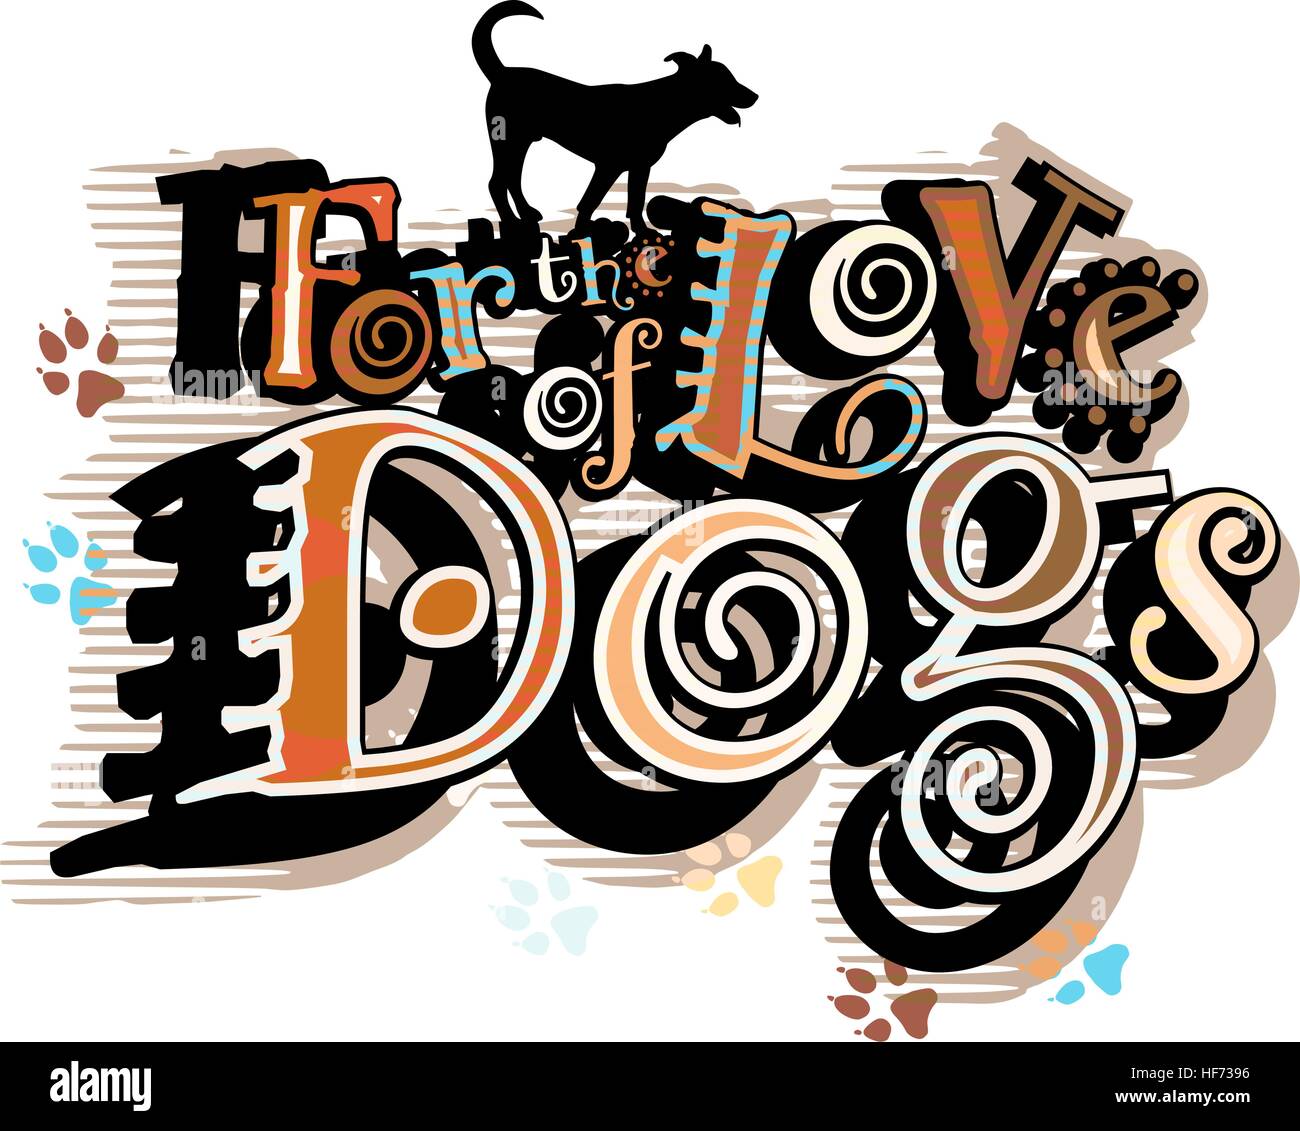 Vector illustration of a dog-loving slogan Stock Vector